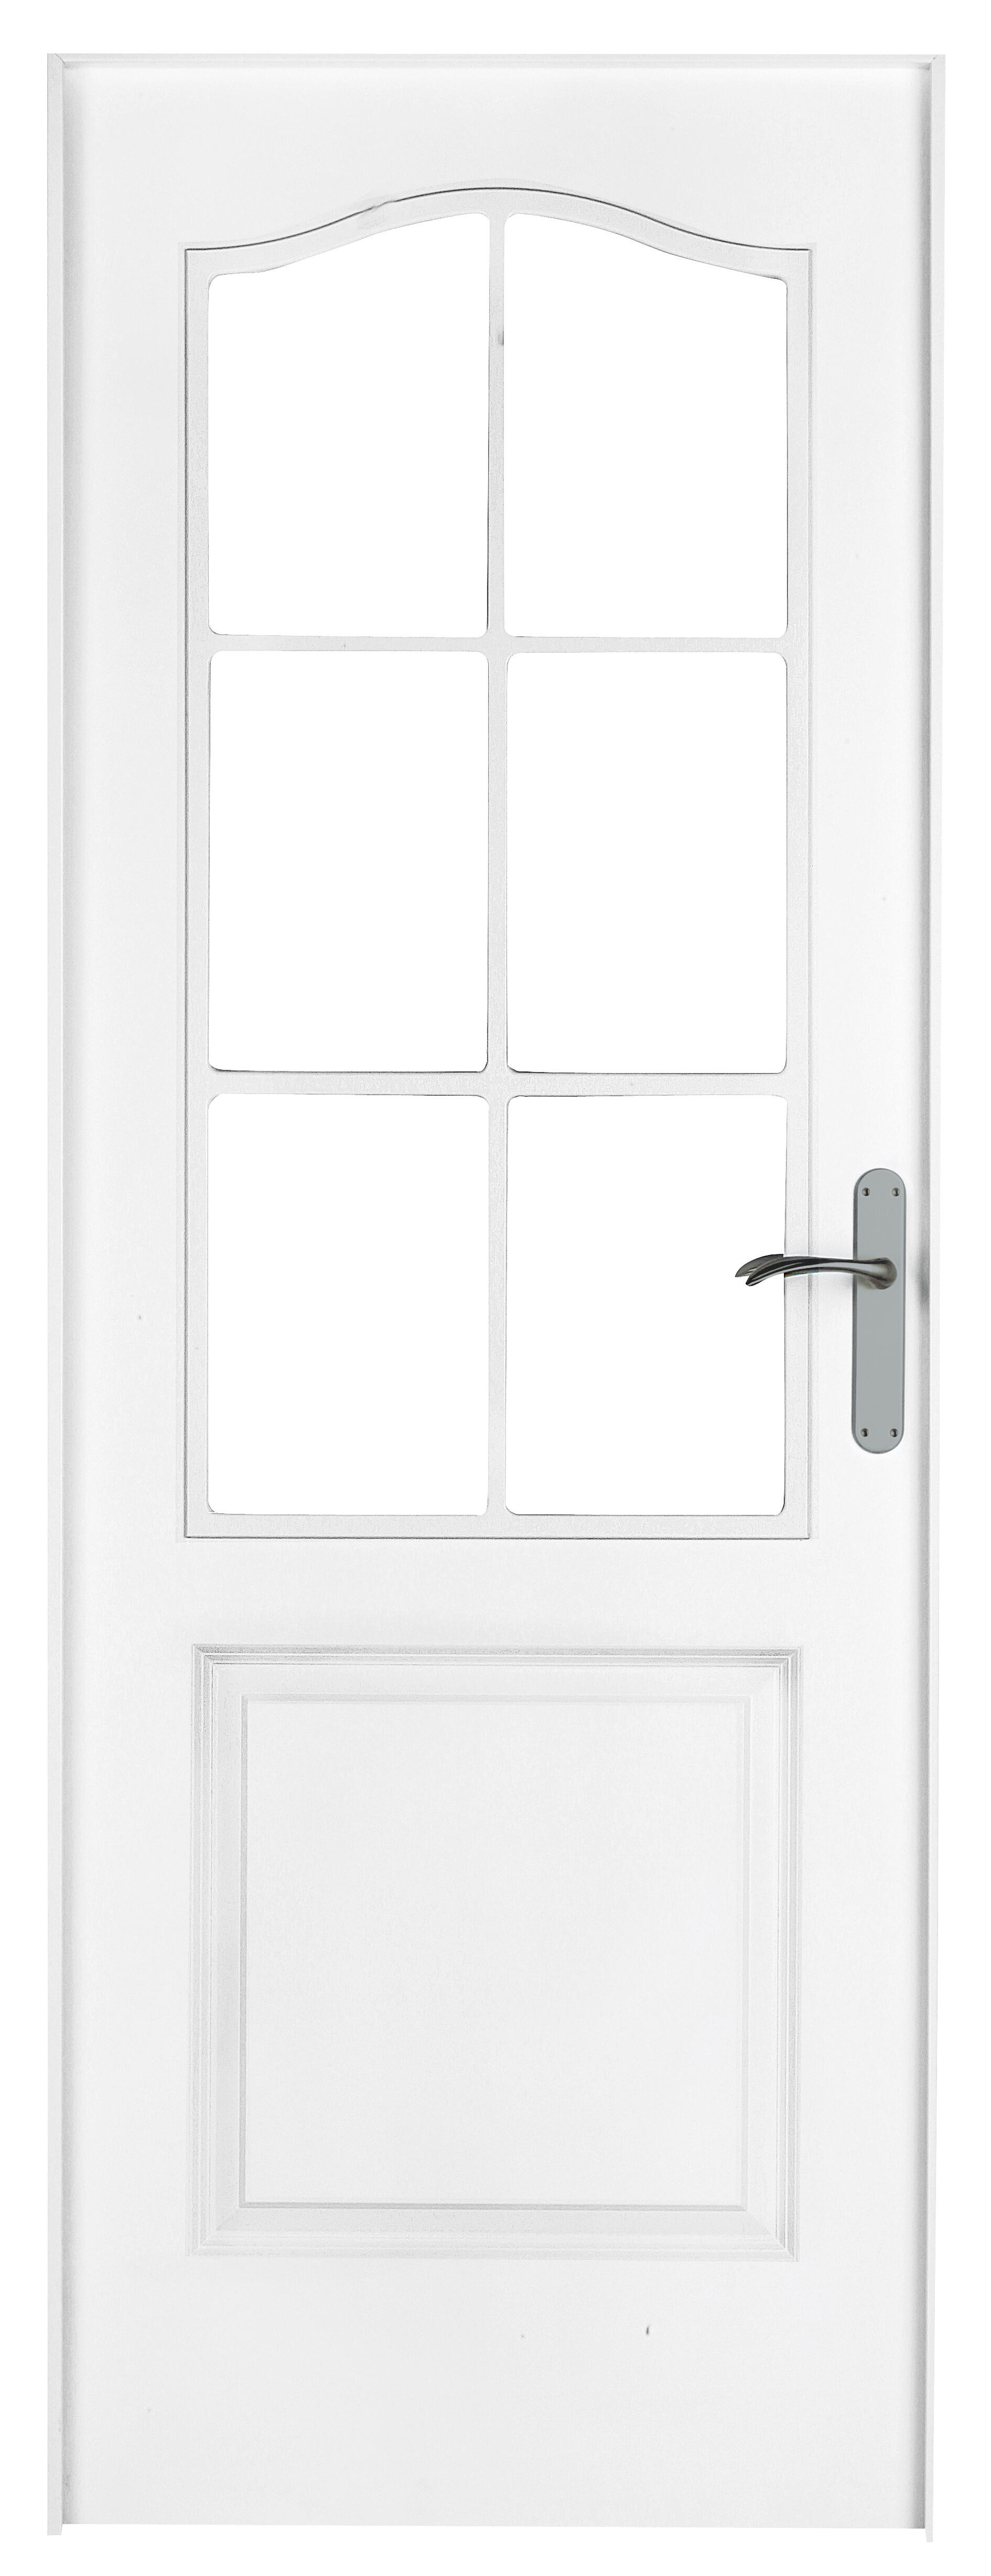 Puerta abatible bonn blanca aero blanco izquierda con cristal de 90x30 y 82.5cm